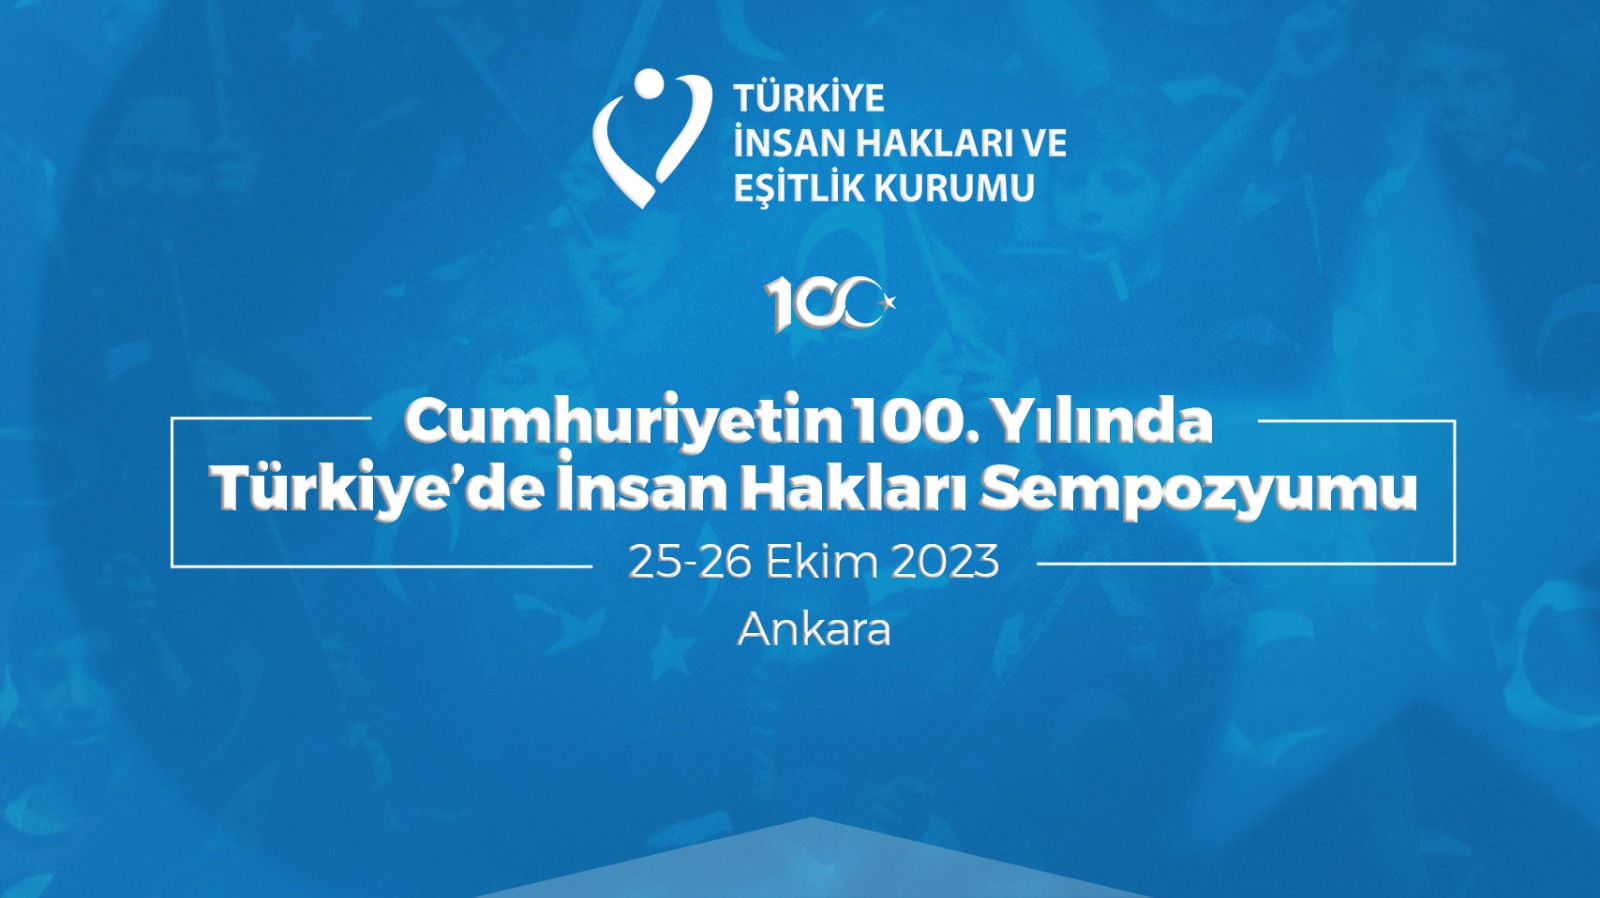 Cumhuriyetin 100. Yılında Türkiye'de İnsan Hakları Sempozyumu 